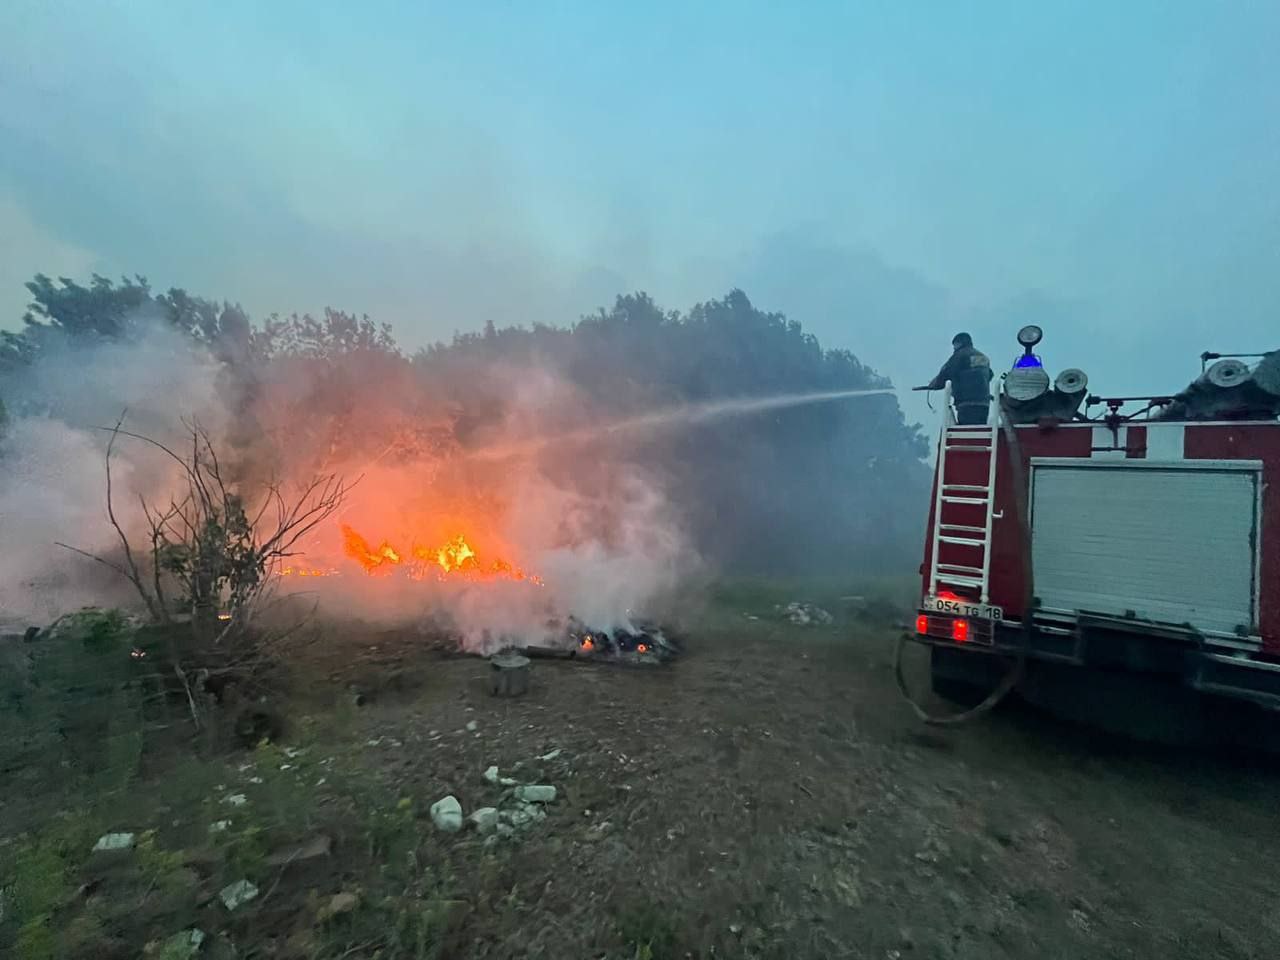 Спасатели, задействованные в тушении лесного пожара, обеспечены питьевой водой и питанием